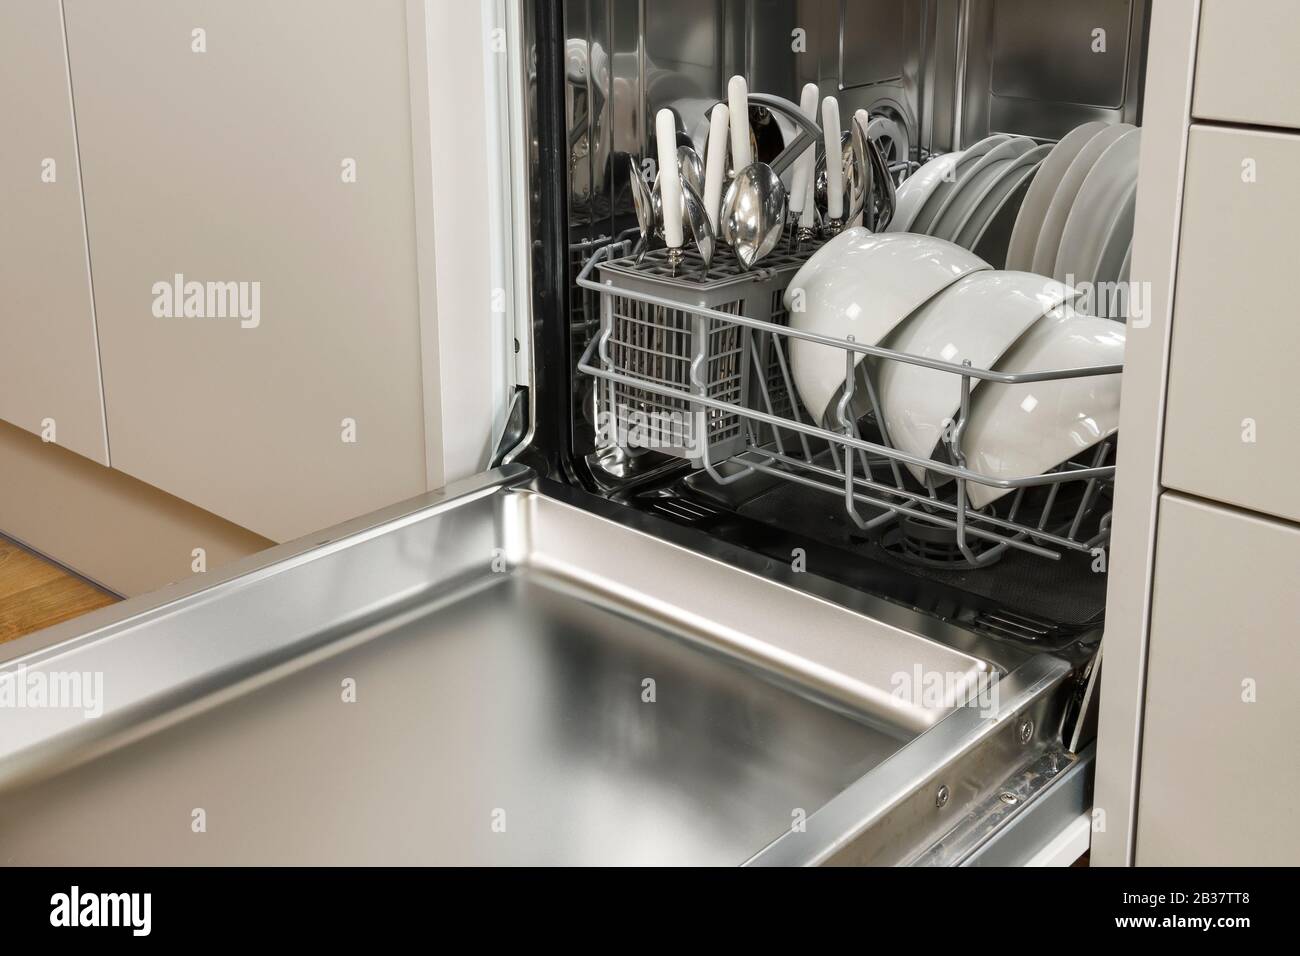 Eine kompakte Geschirrspülmaschine mit weißem Geschirr in einer modernen Küche Stockfoto